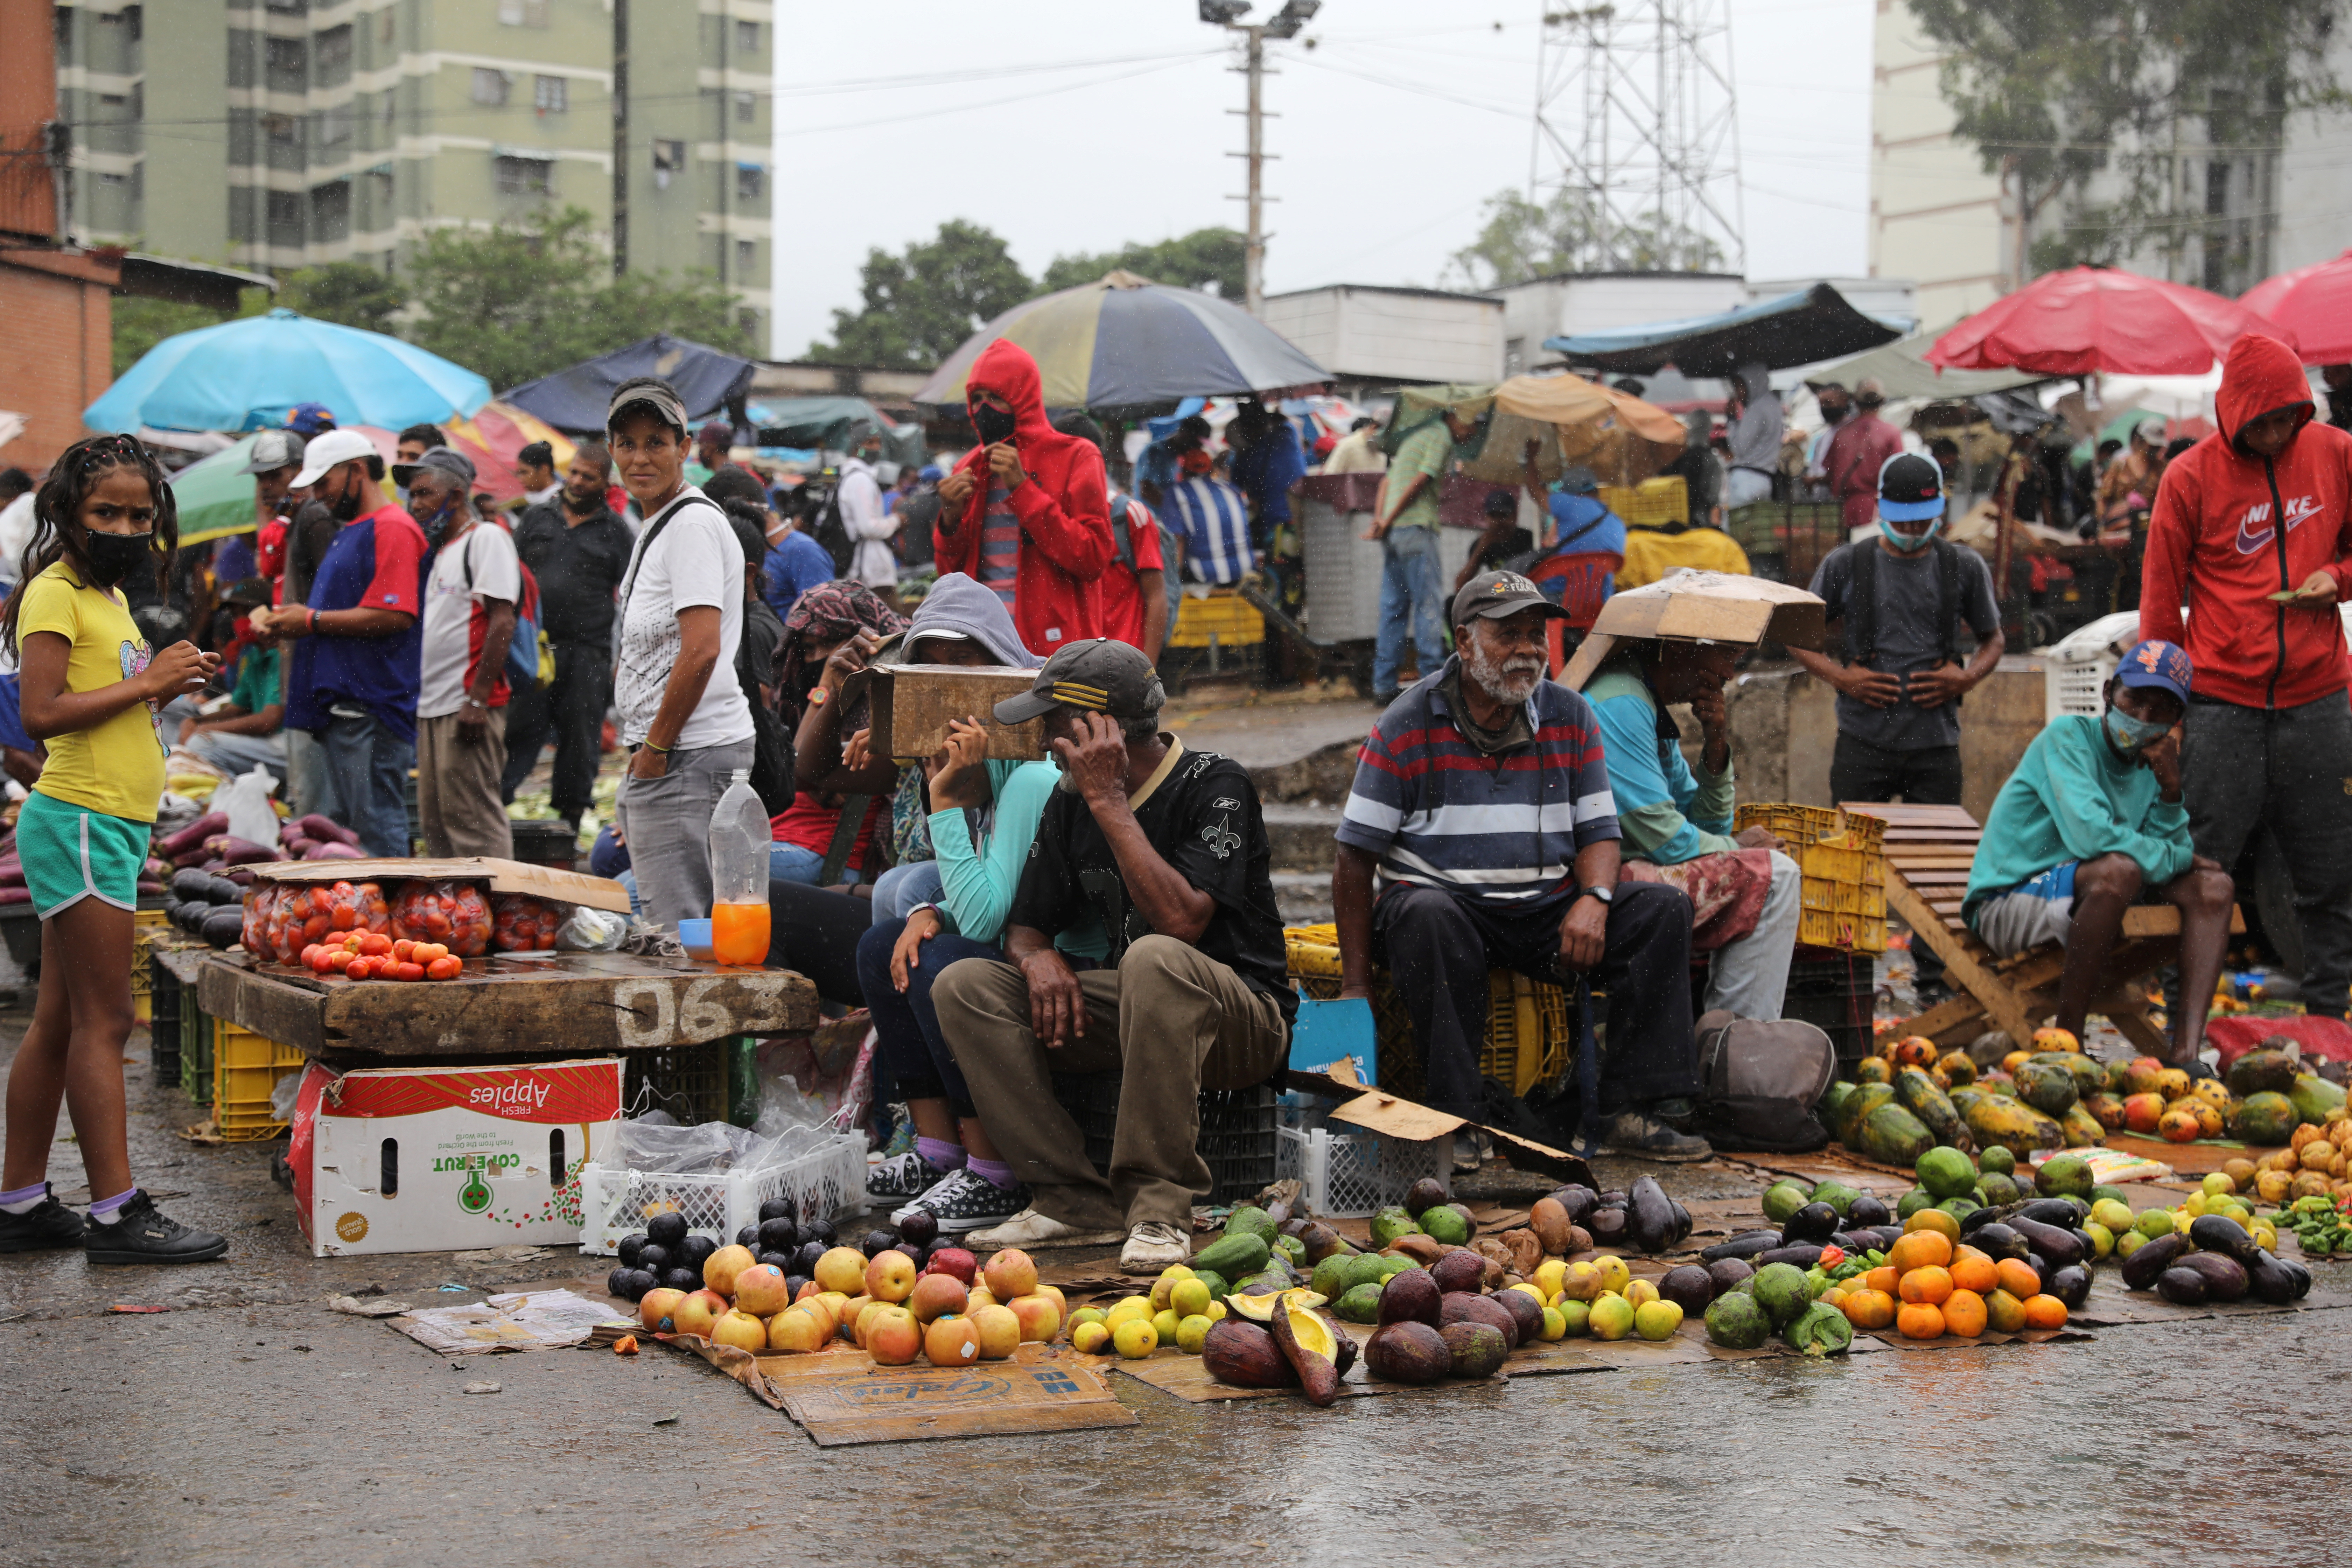 La alimentación del venezolano carece de los nutrientes necesarios, asegura especialista